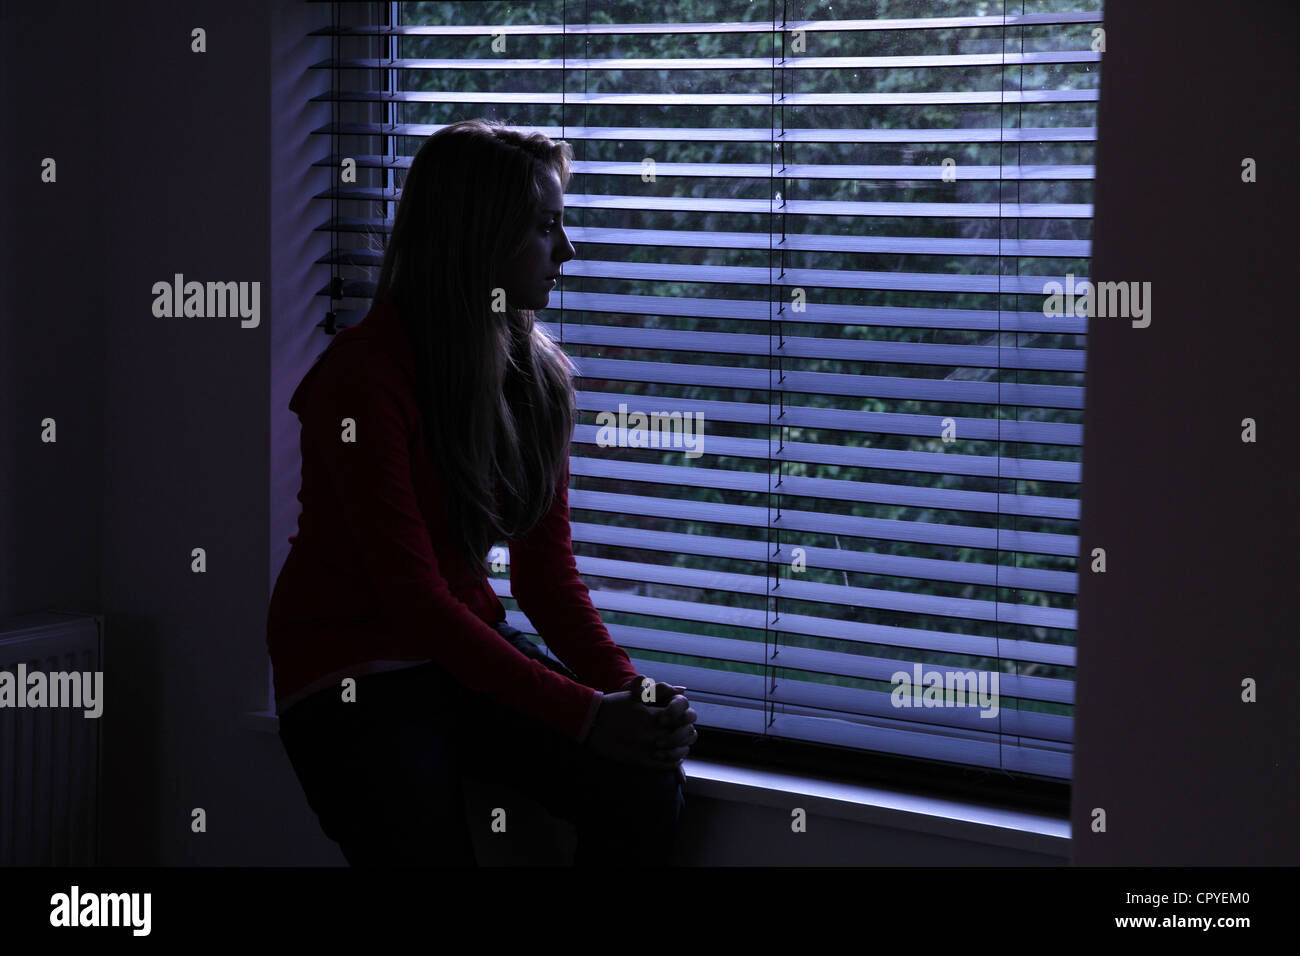 Jeune femme assise seule dans une pièce sombre à la recherche à travers une fenêtre aveugle. Banque D'Images